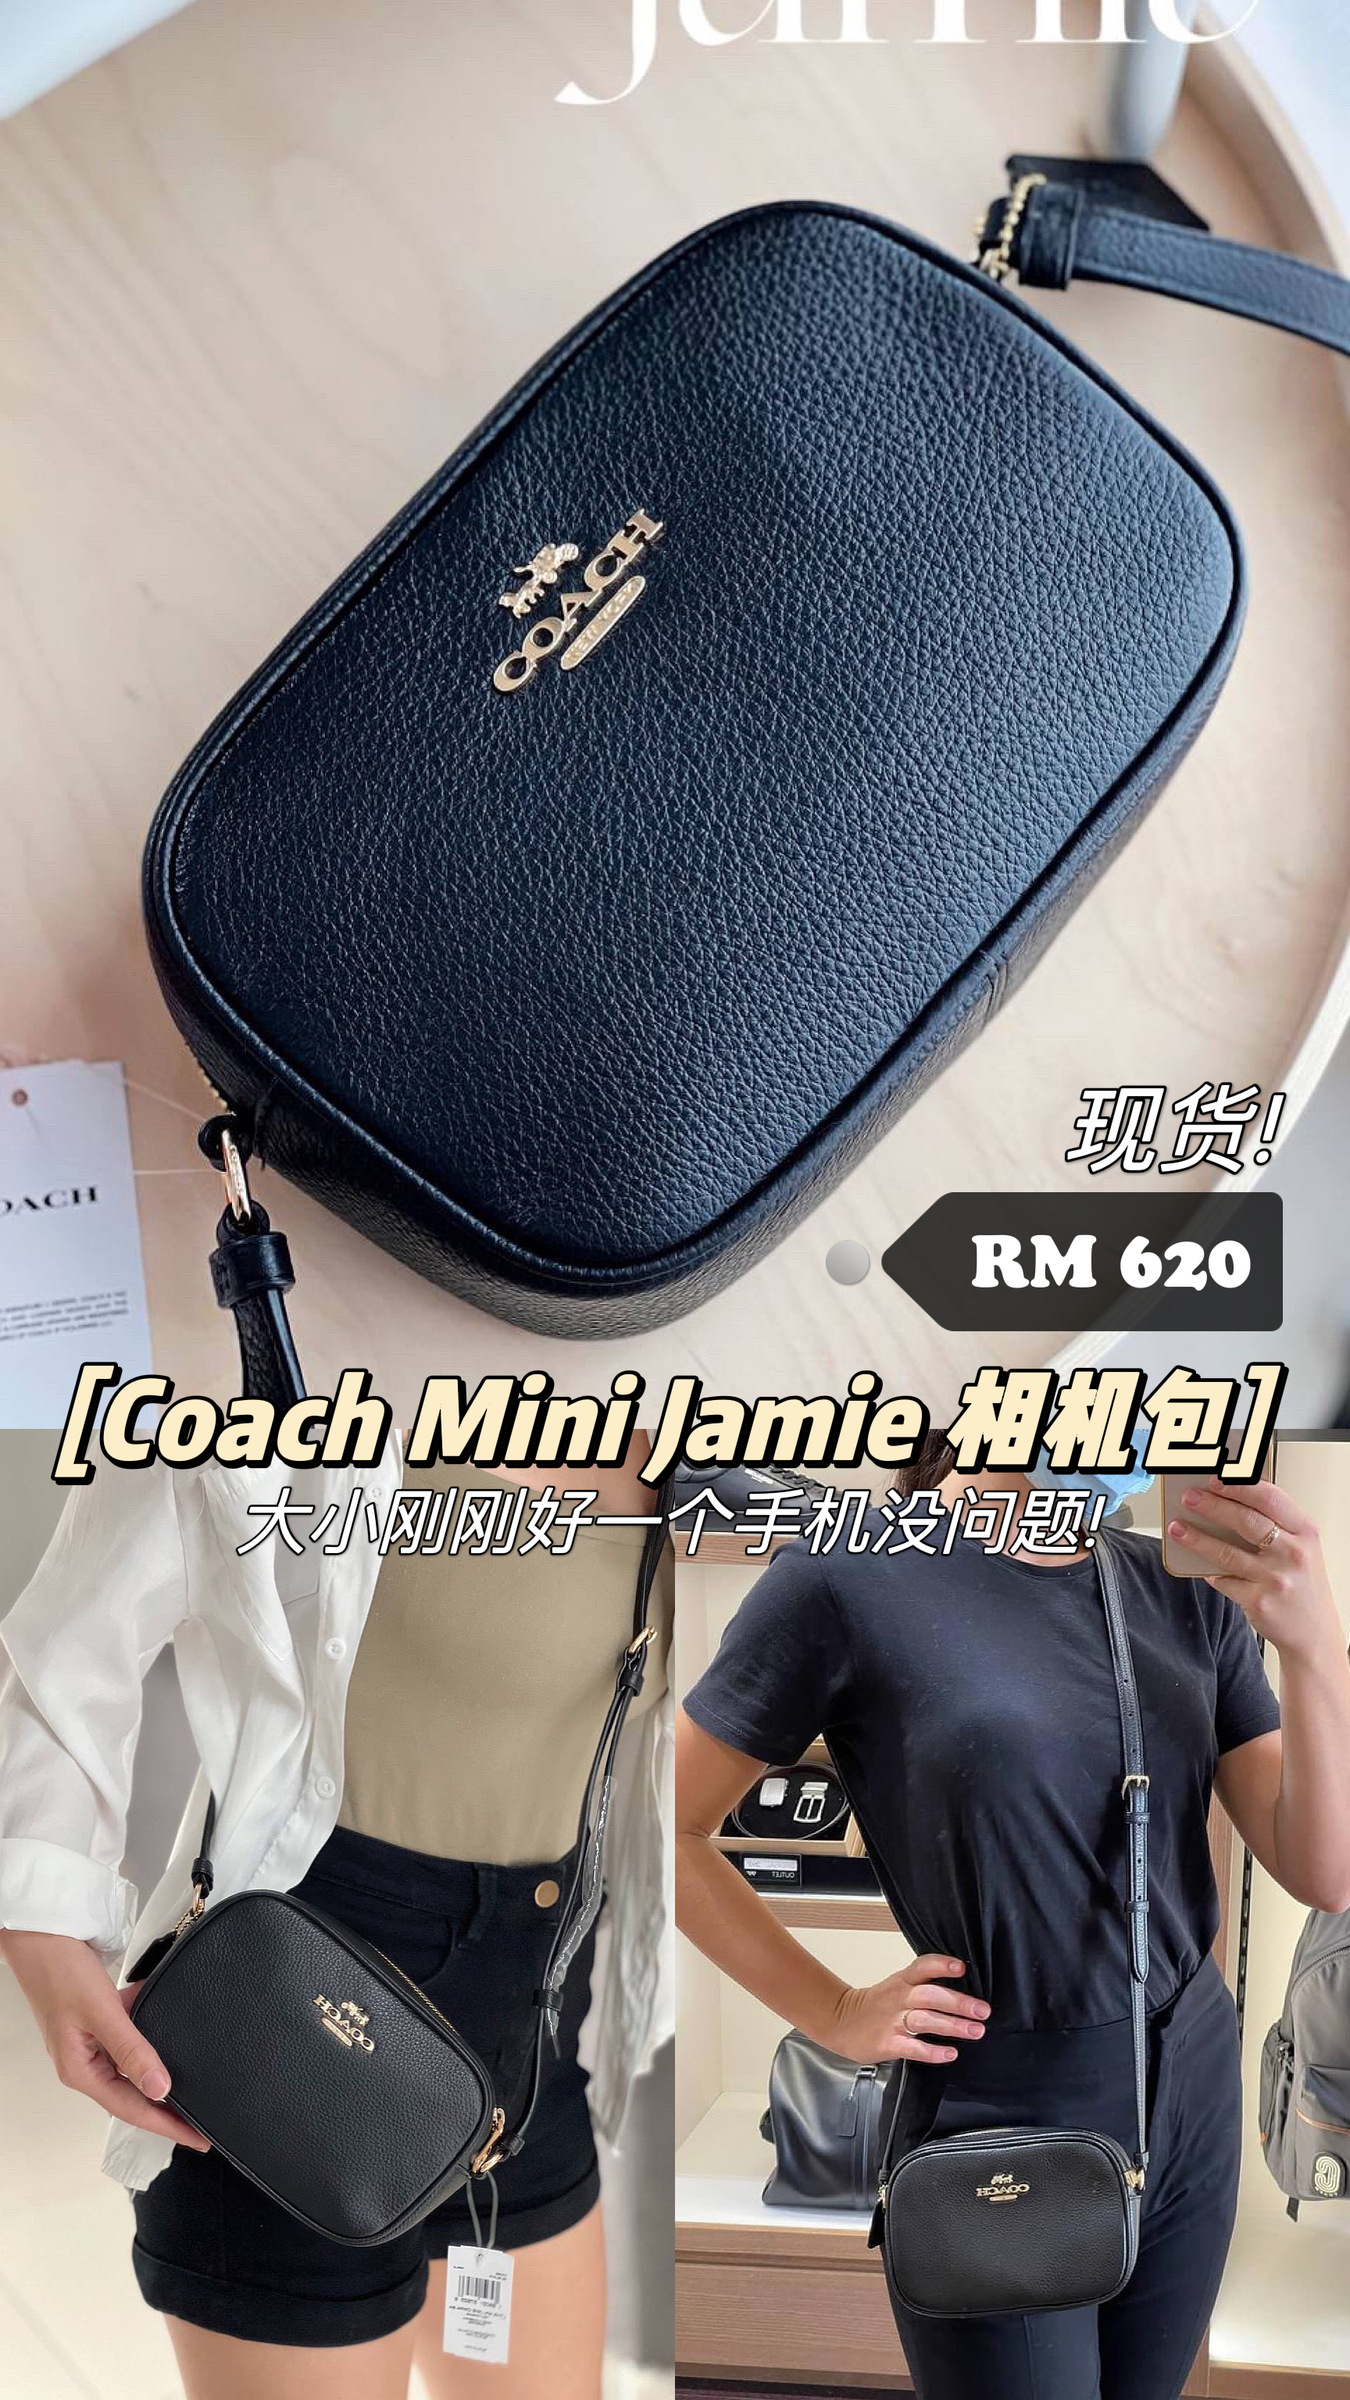 Coach Mini Jamie Camera Bag in Black